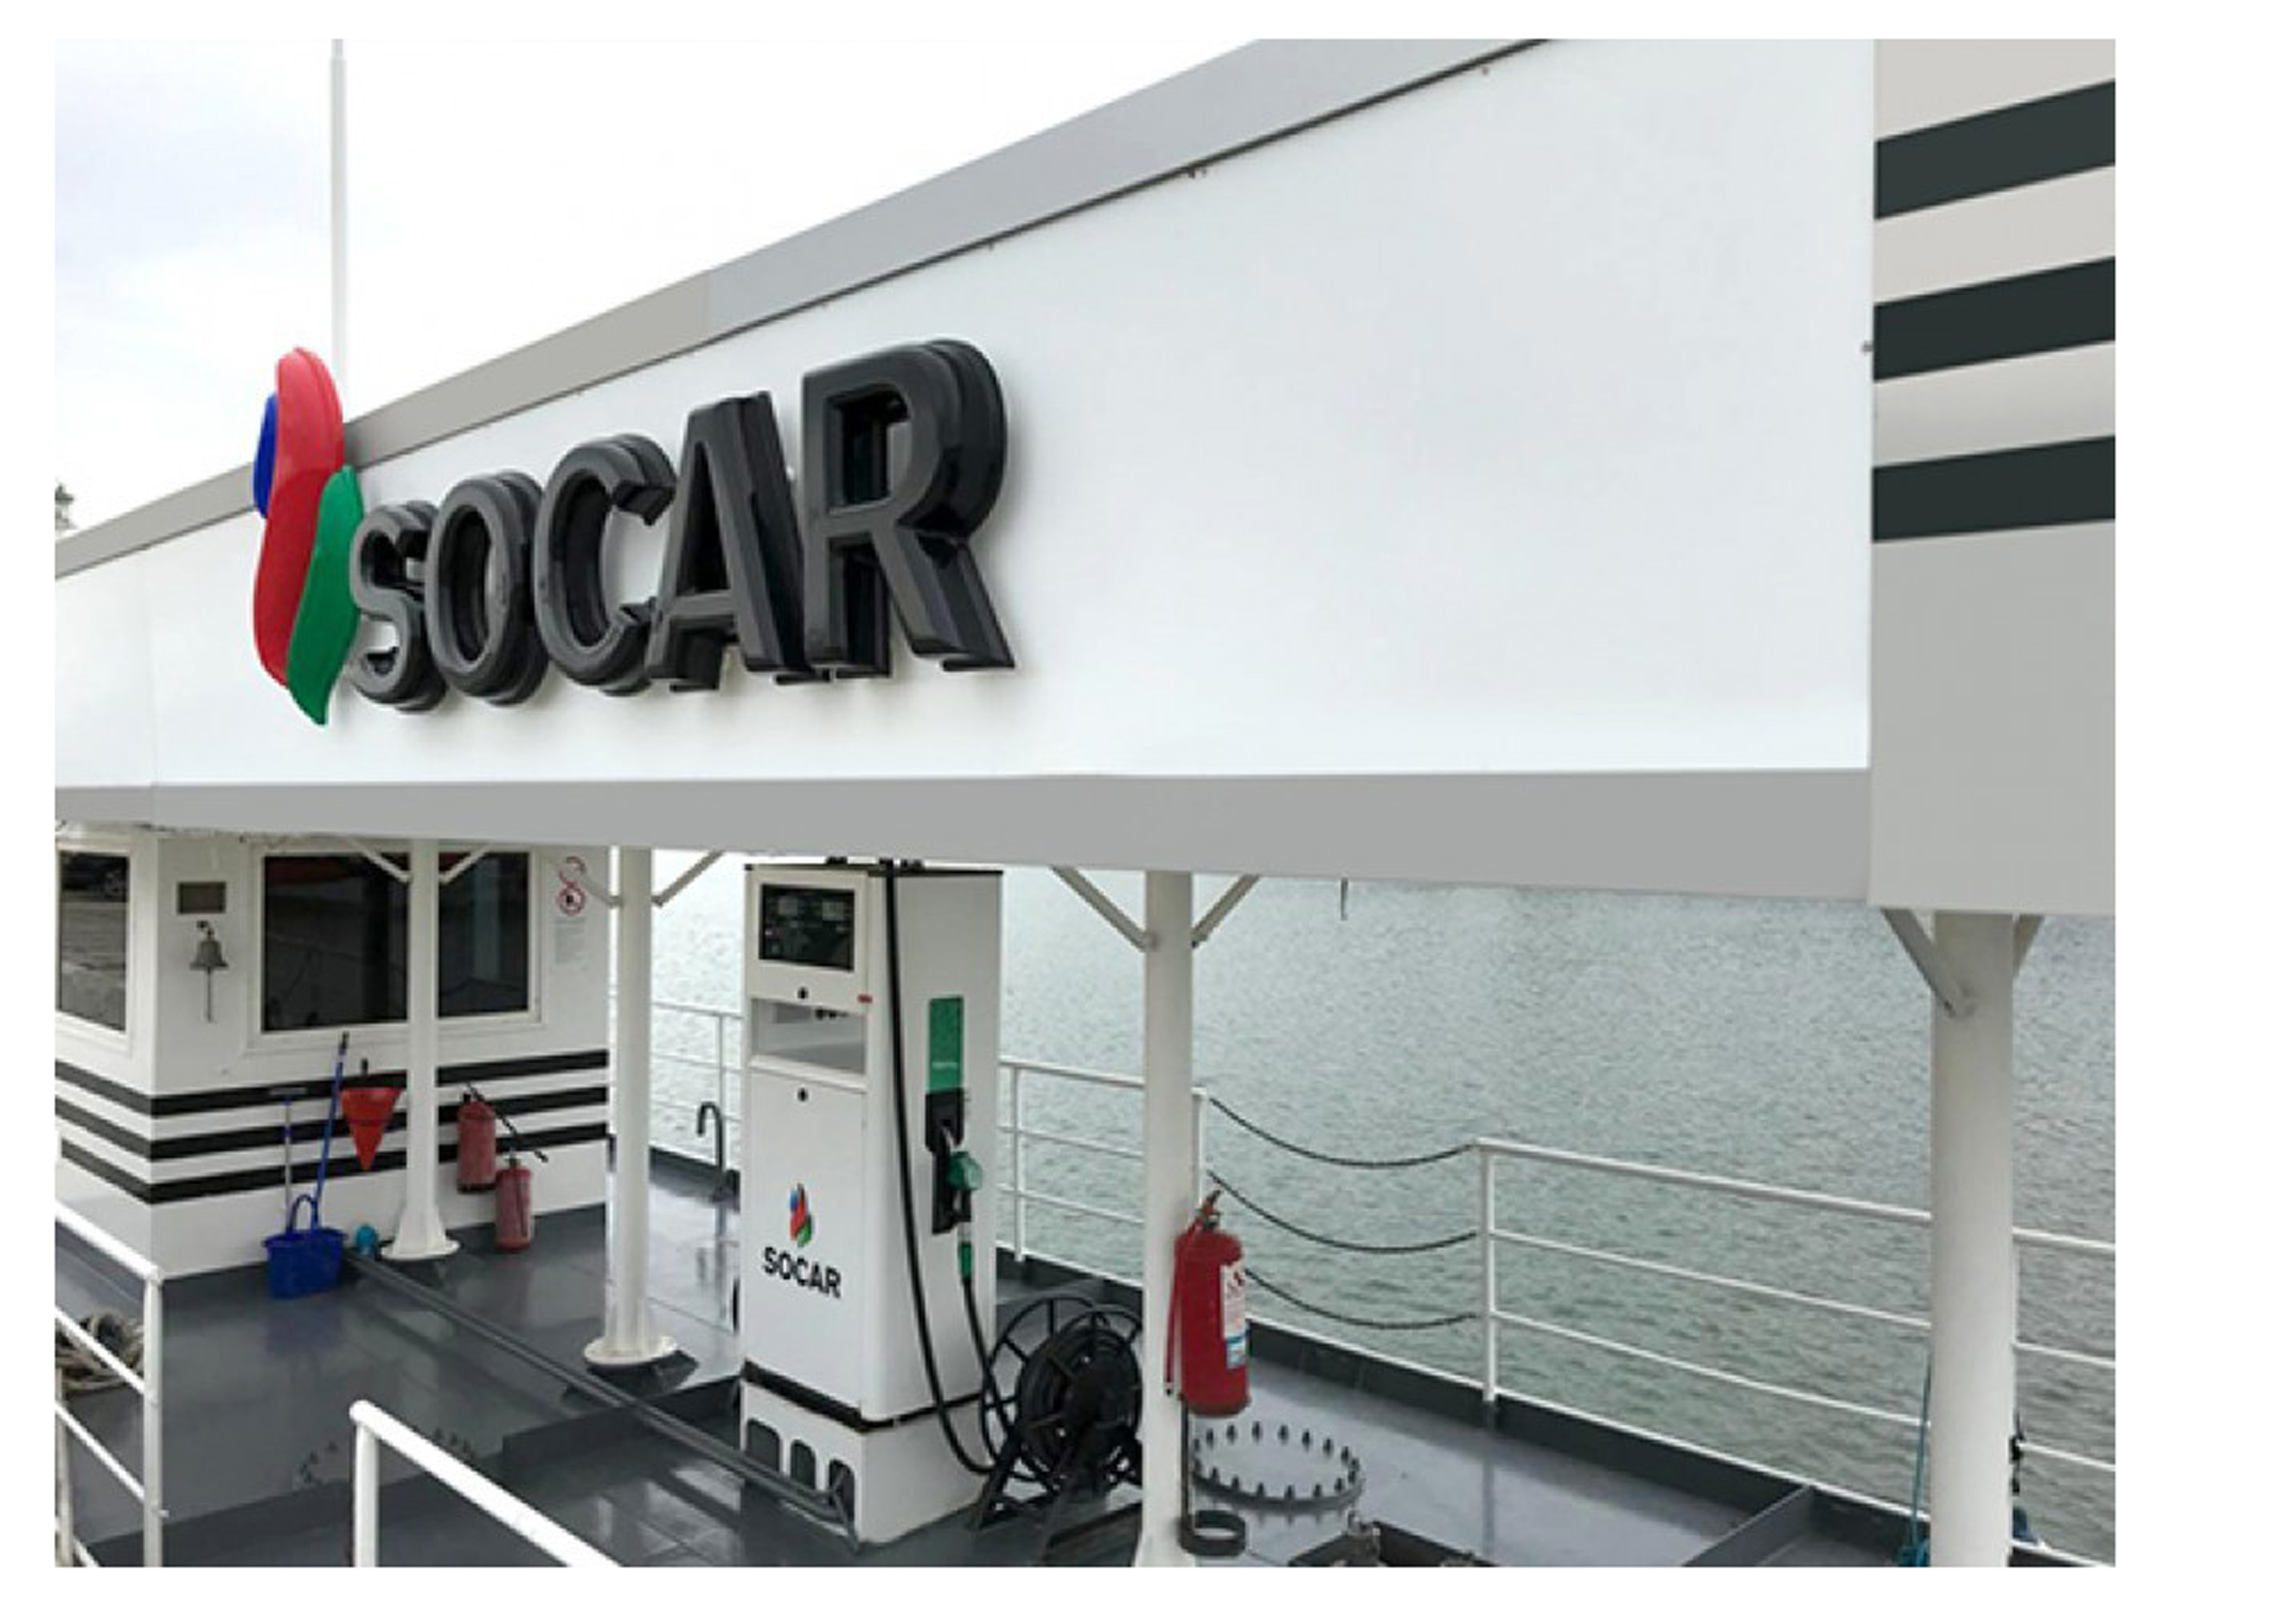 Торговый дом «SOCAR Украина» импортировал 250 млн кубометров природного газа